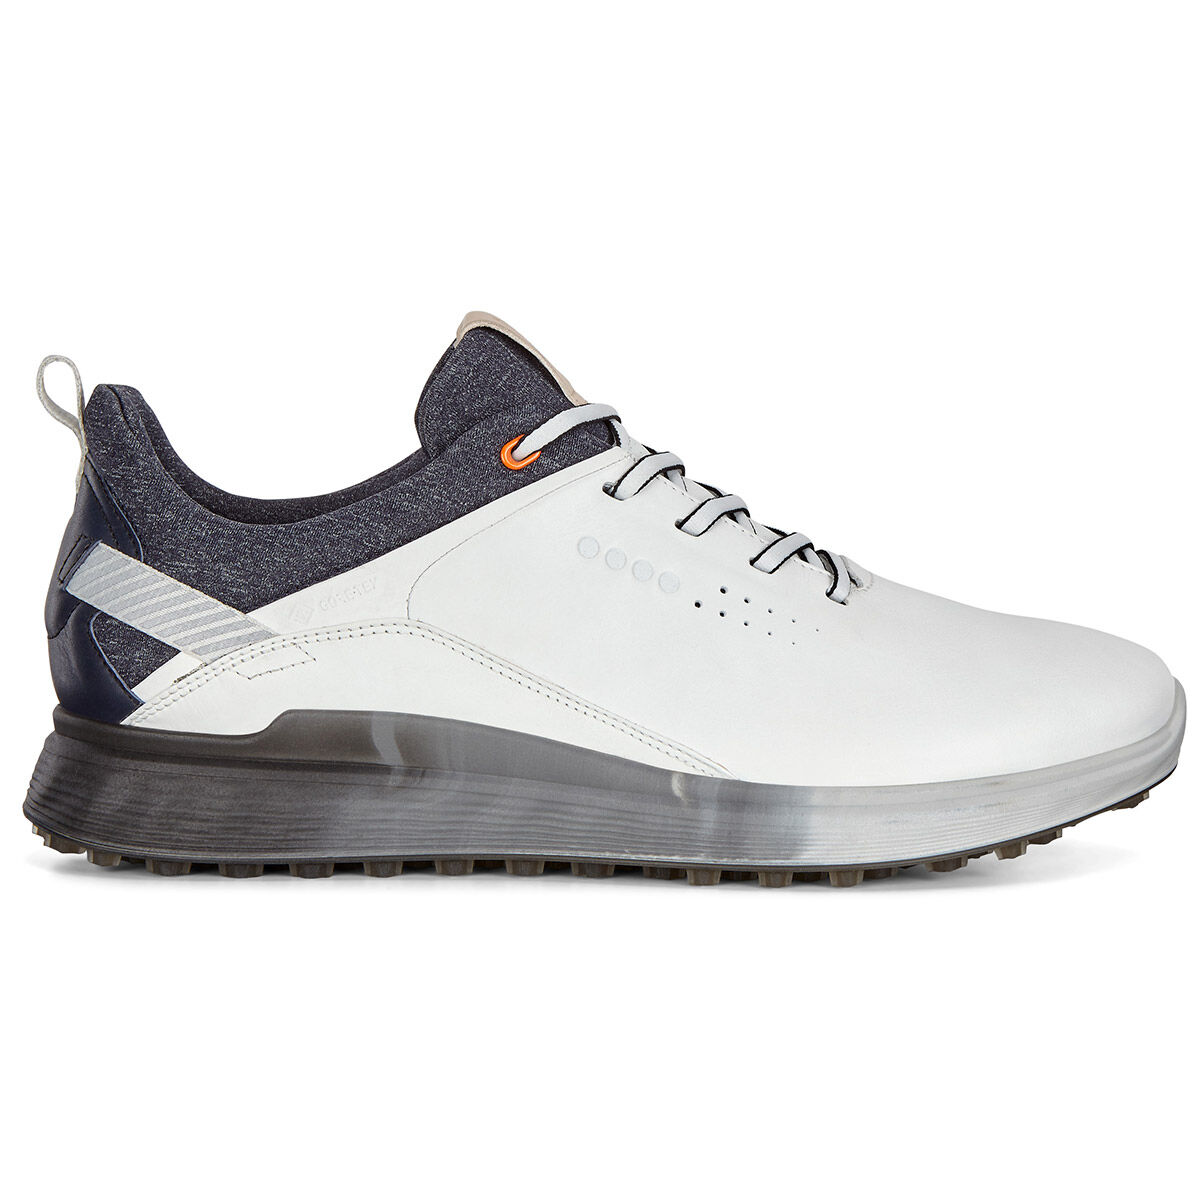 Chaussures Golf S-Three ECCO | Online Golf